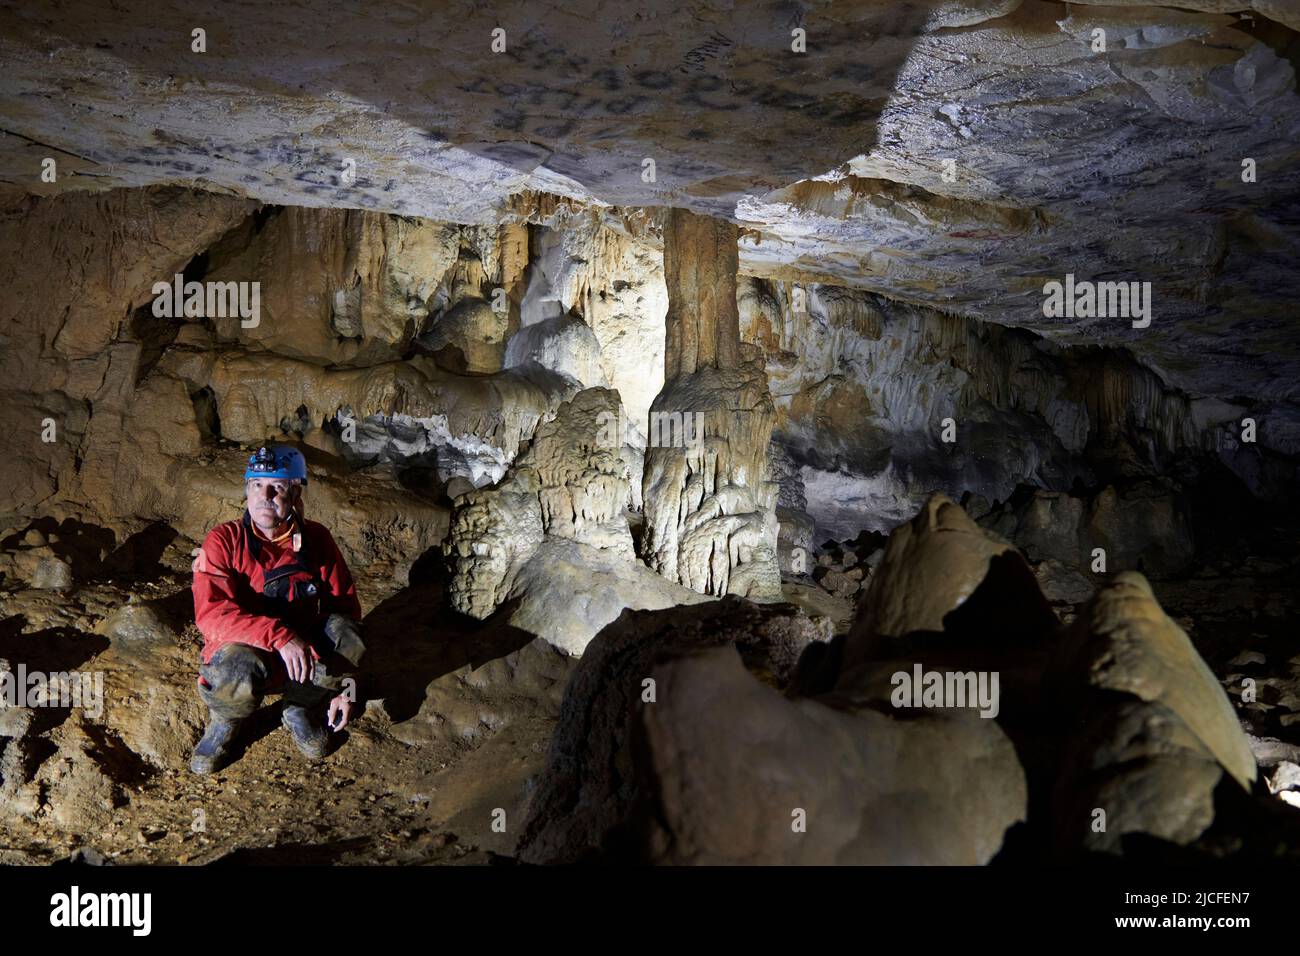 Cave explorer in the Grotto de la Tuilerie in France Stock Photo